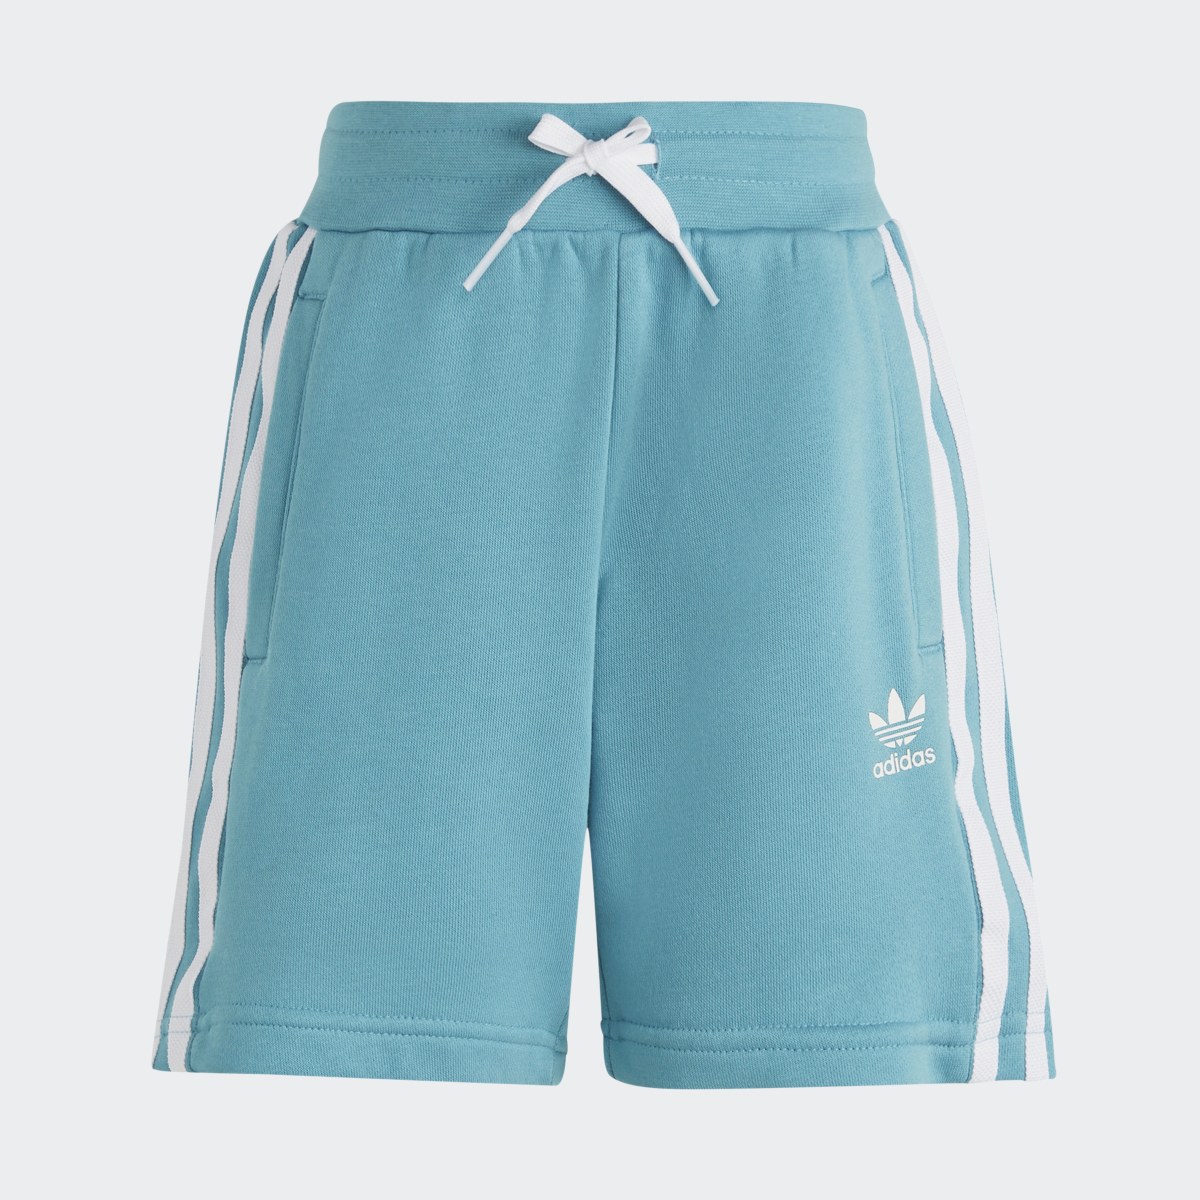 Adidas Adicolor Shorts and Tee Set. 9